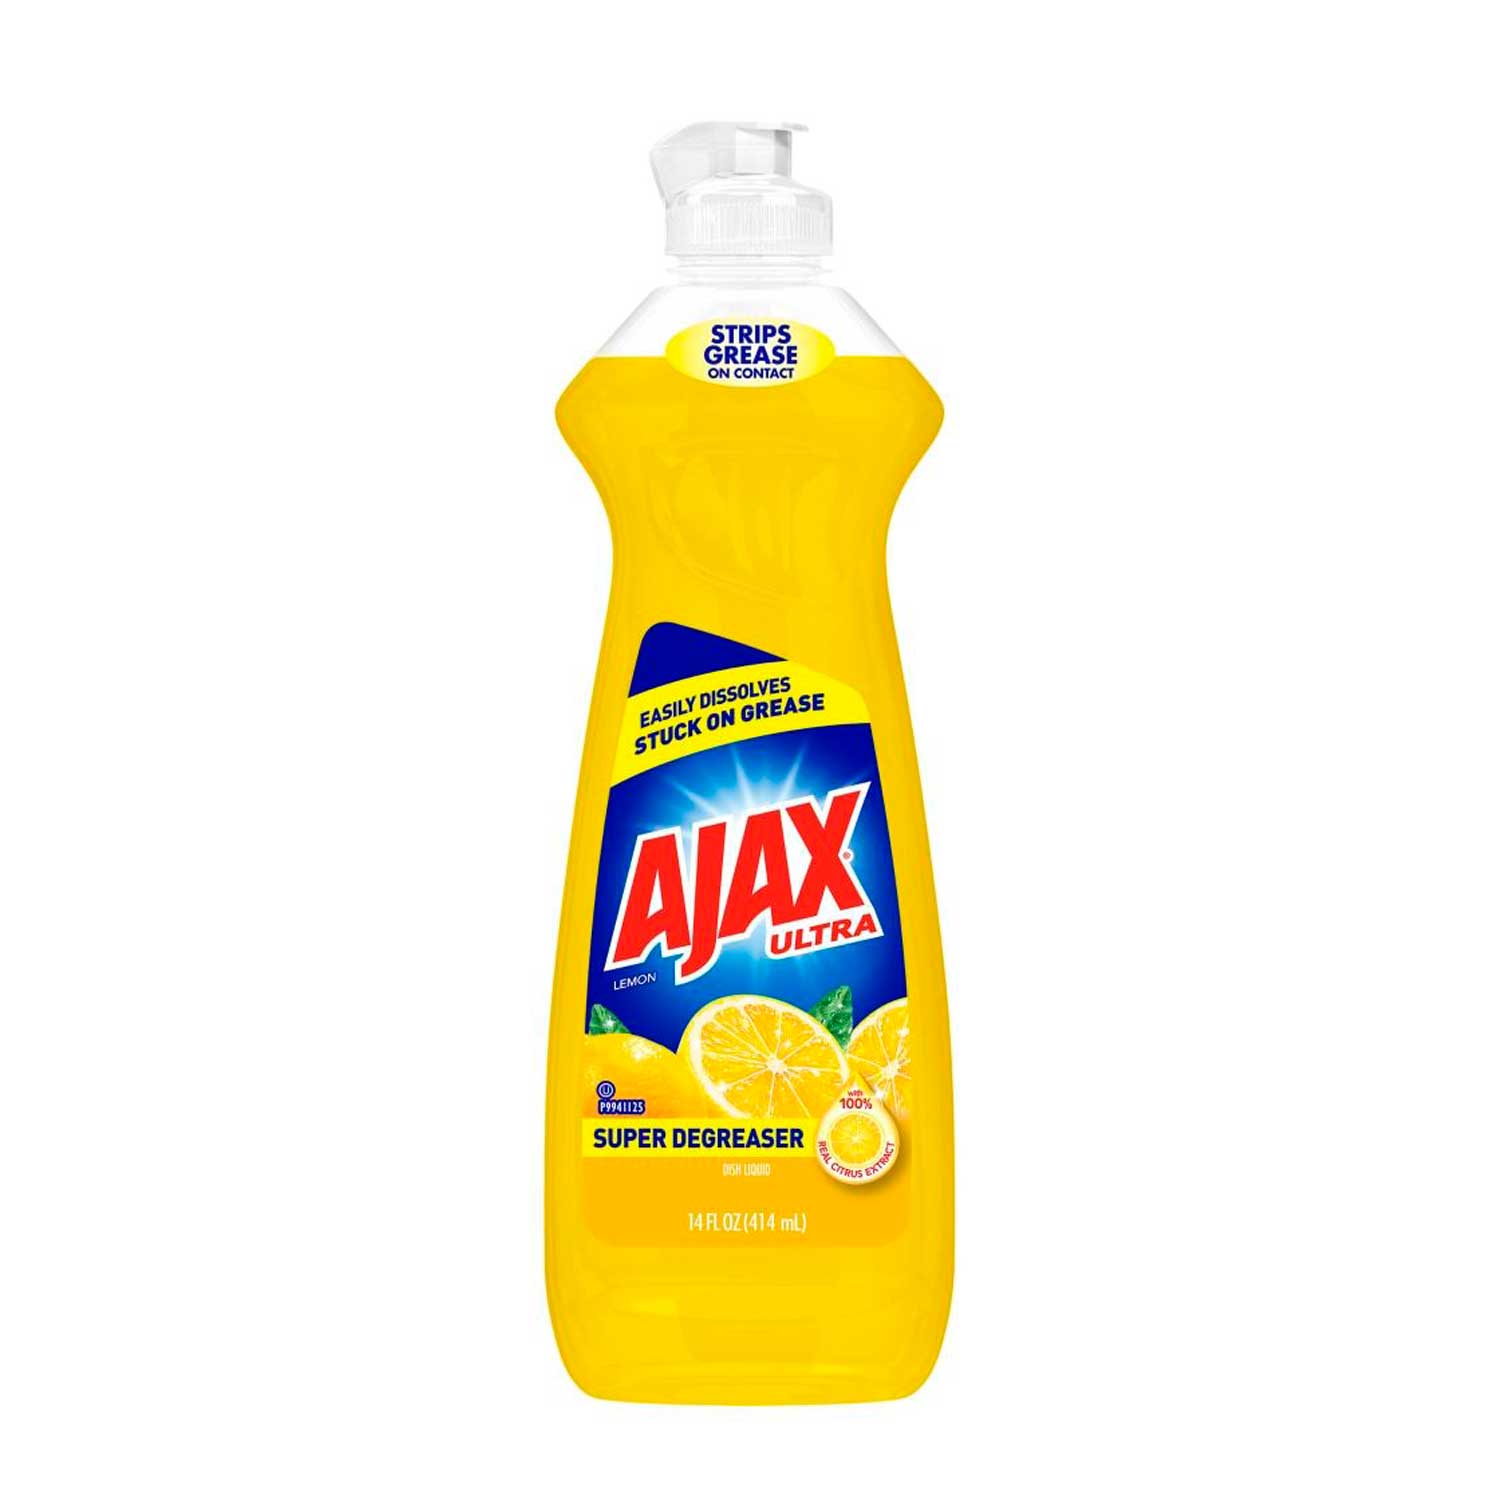 Ajax Ultra de Limón Super Desgrasador. 414 ml